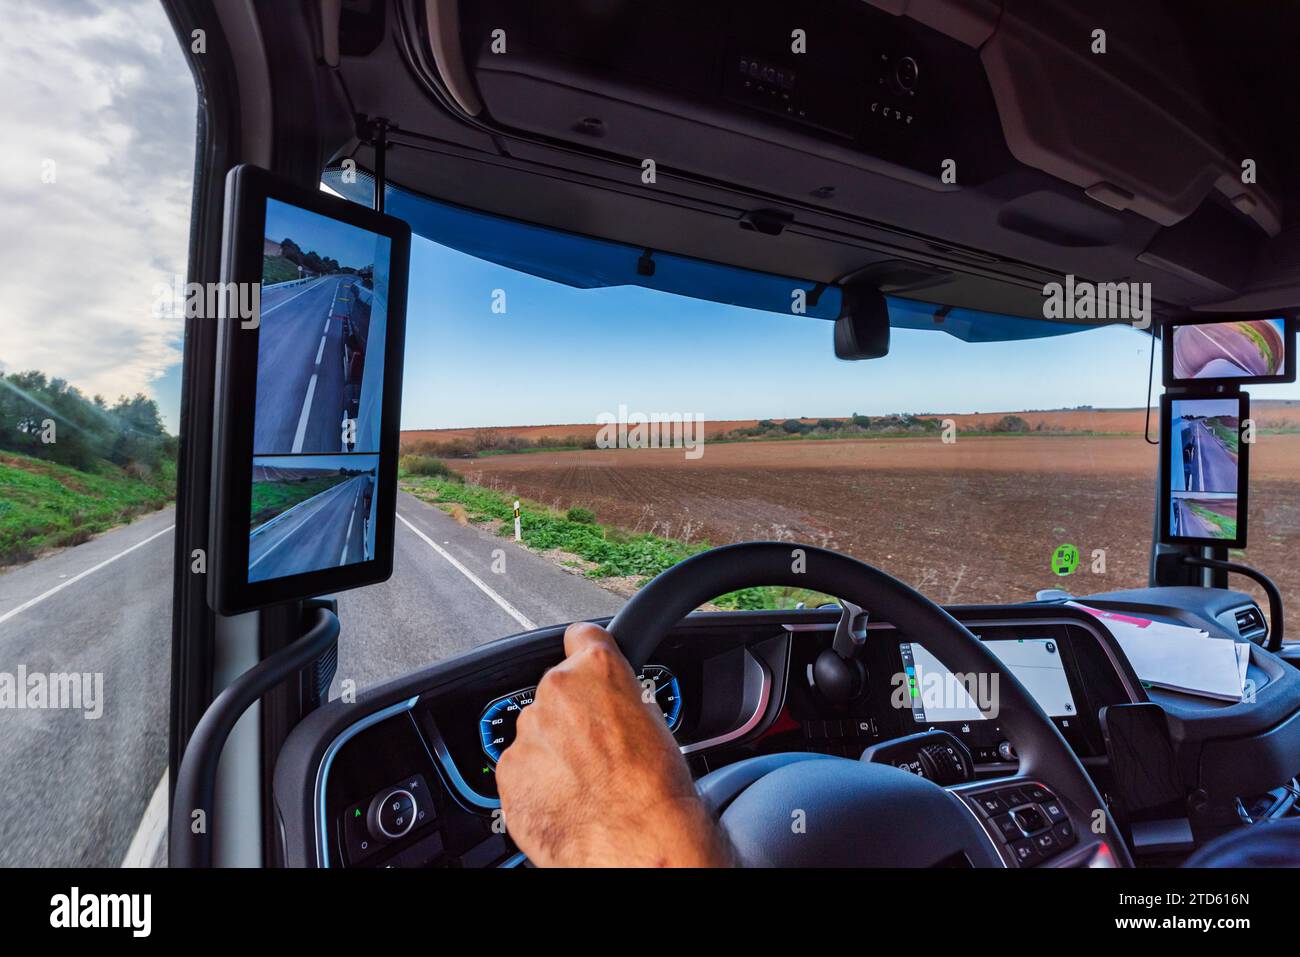 Vue de l'intérieur de la cabine d'un camion avec miroirs de caméra et écrans des deux côtés de la cabine. Banque D'Images